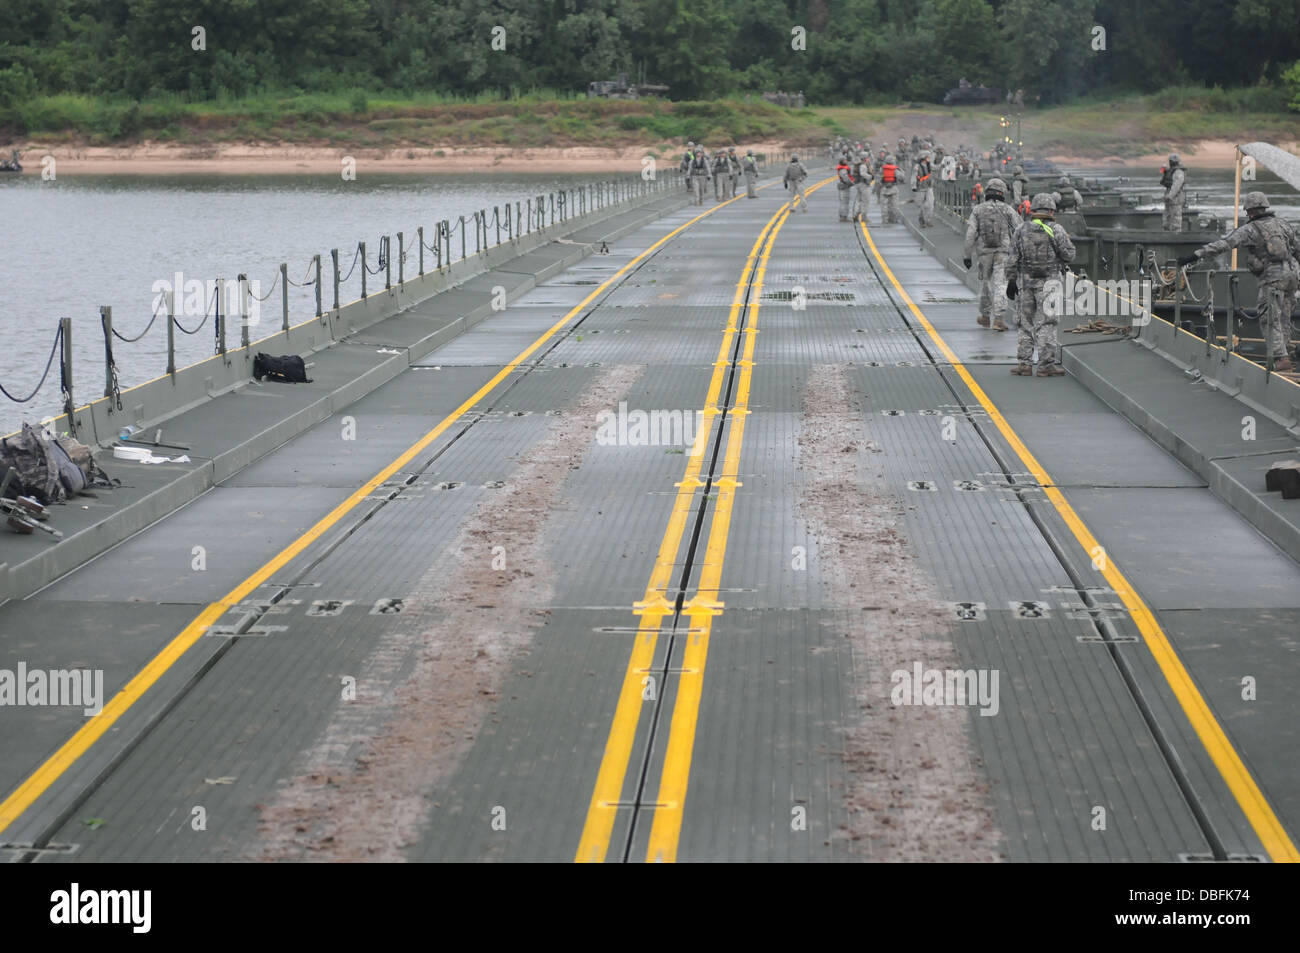 Soldaten inspizieren einen Improved Ribbon Bridge nach seiner Fertigstellung während Betrieb Fluss Angriffs 24. Juli 2013. Die Fertigstellung der Brücke war die letzte Übung für fast 800 Soldaten, die Vertreter der Armee-Reserve und aktiven Dienst. Stockfoto